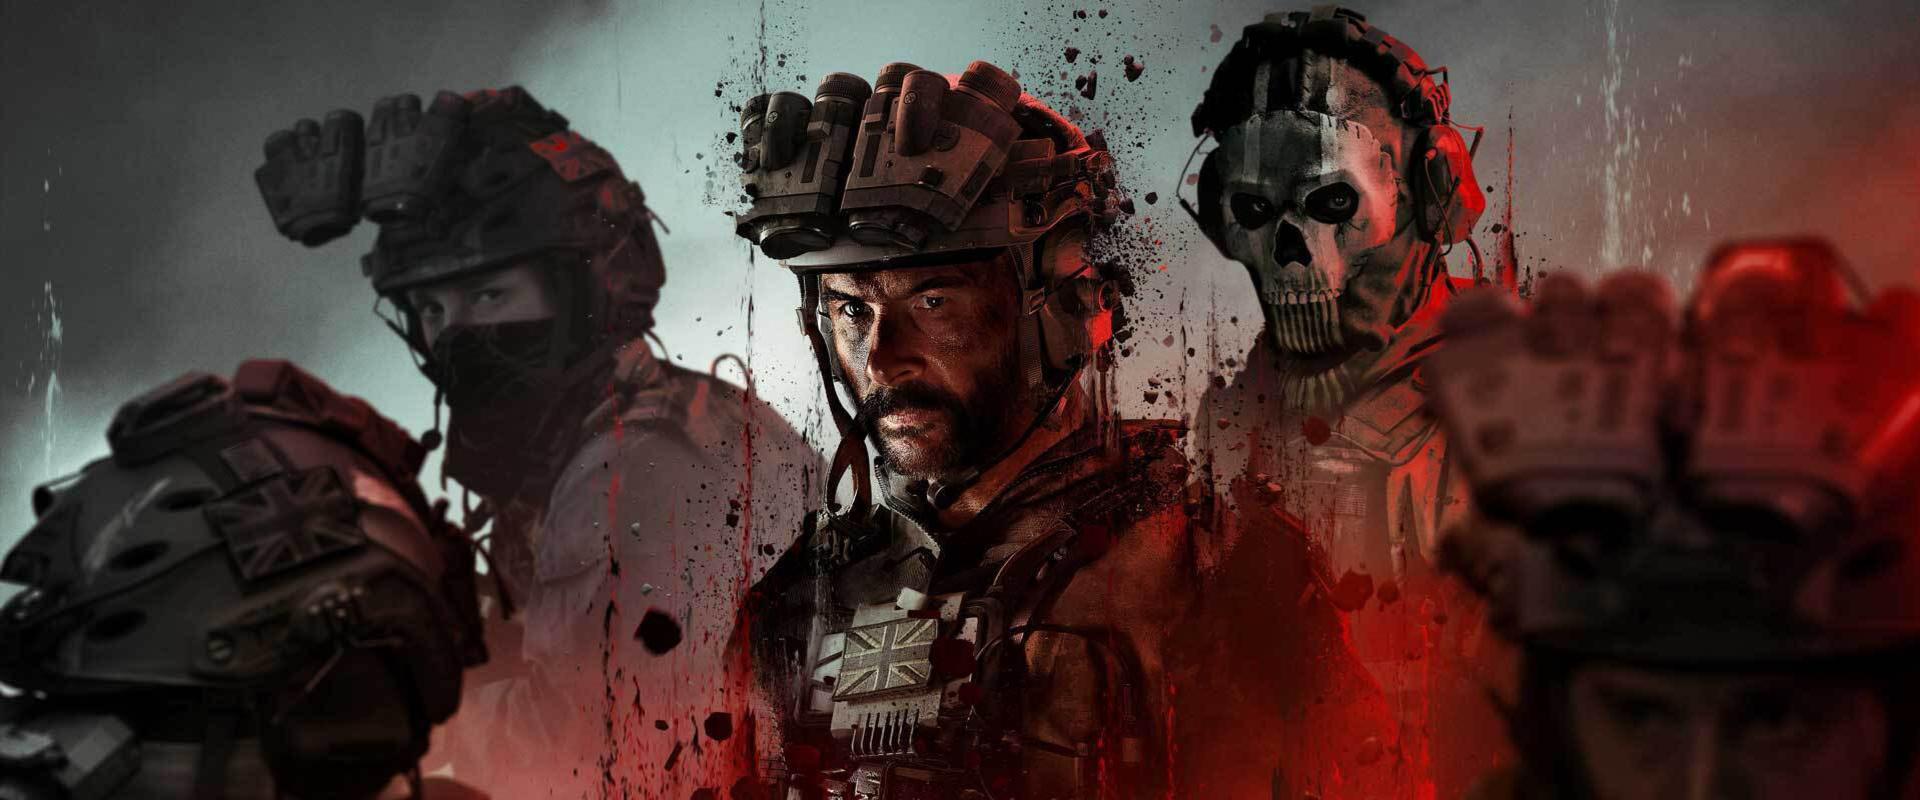 680 millió dollárra perelik az Activisiont a Call of Duty miatt